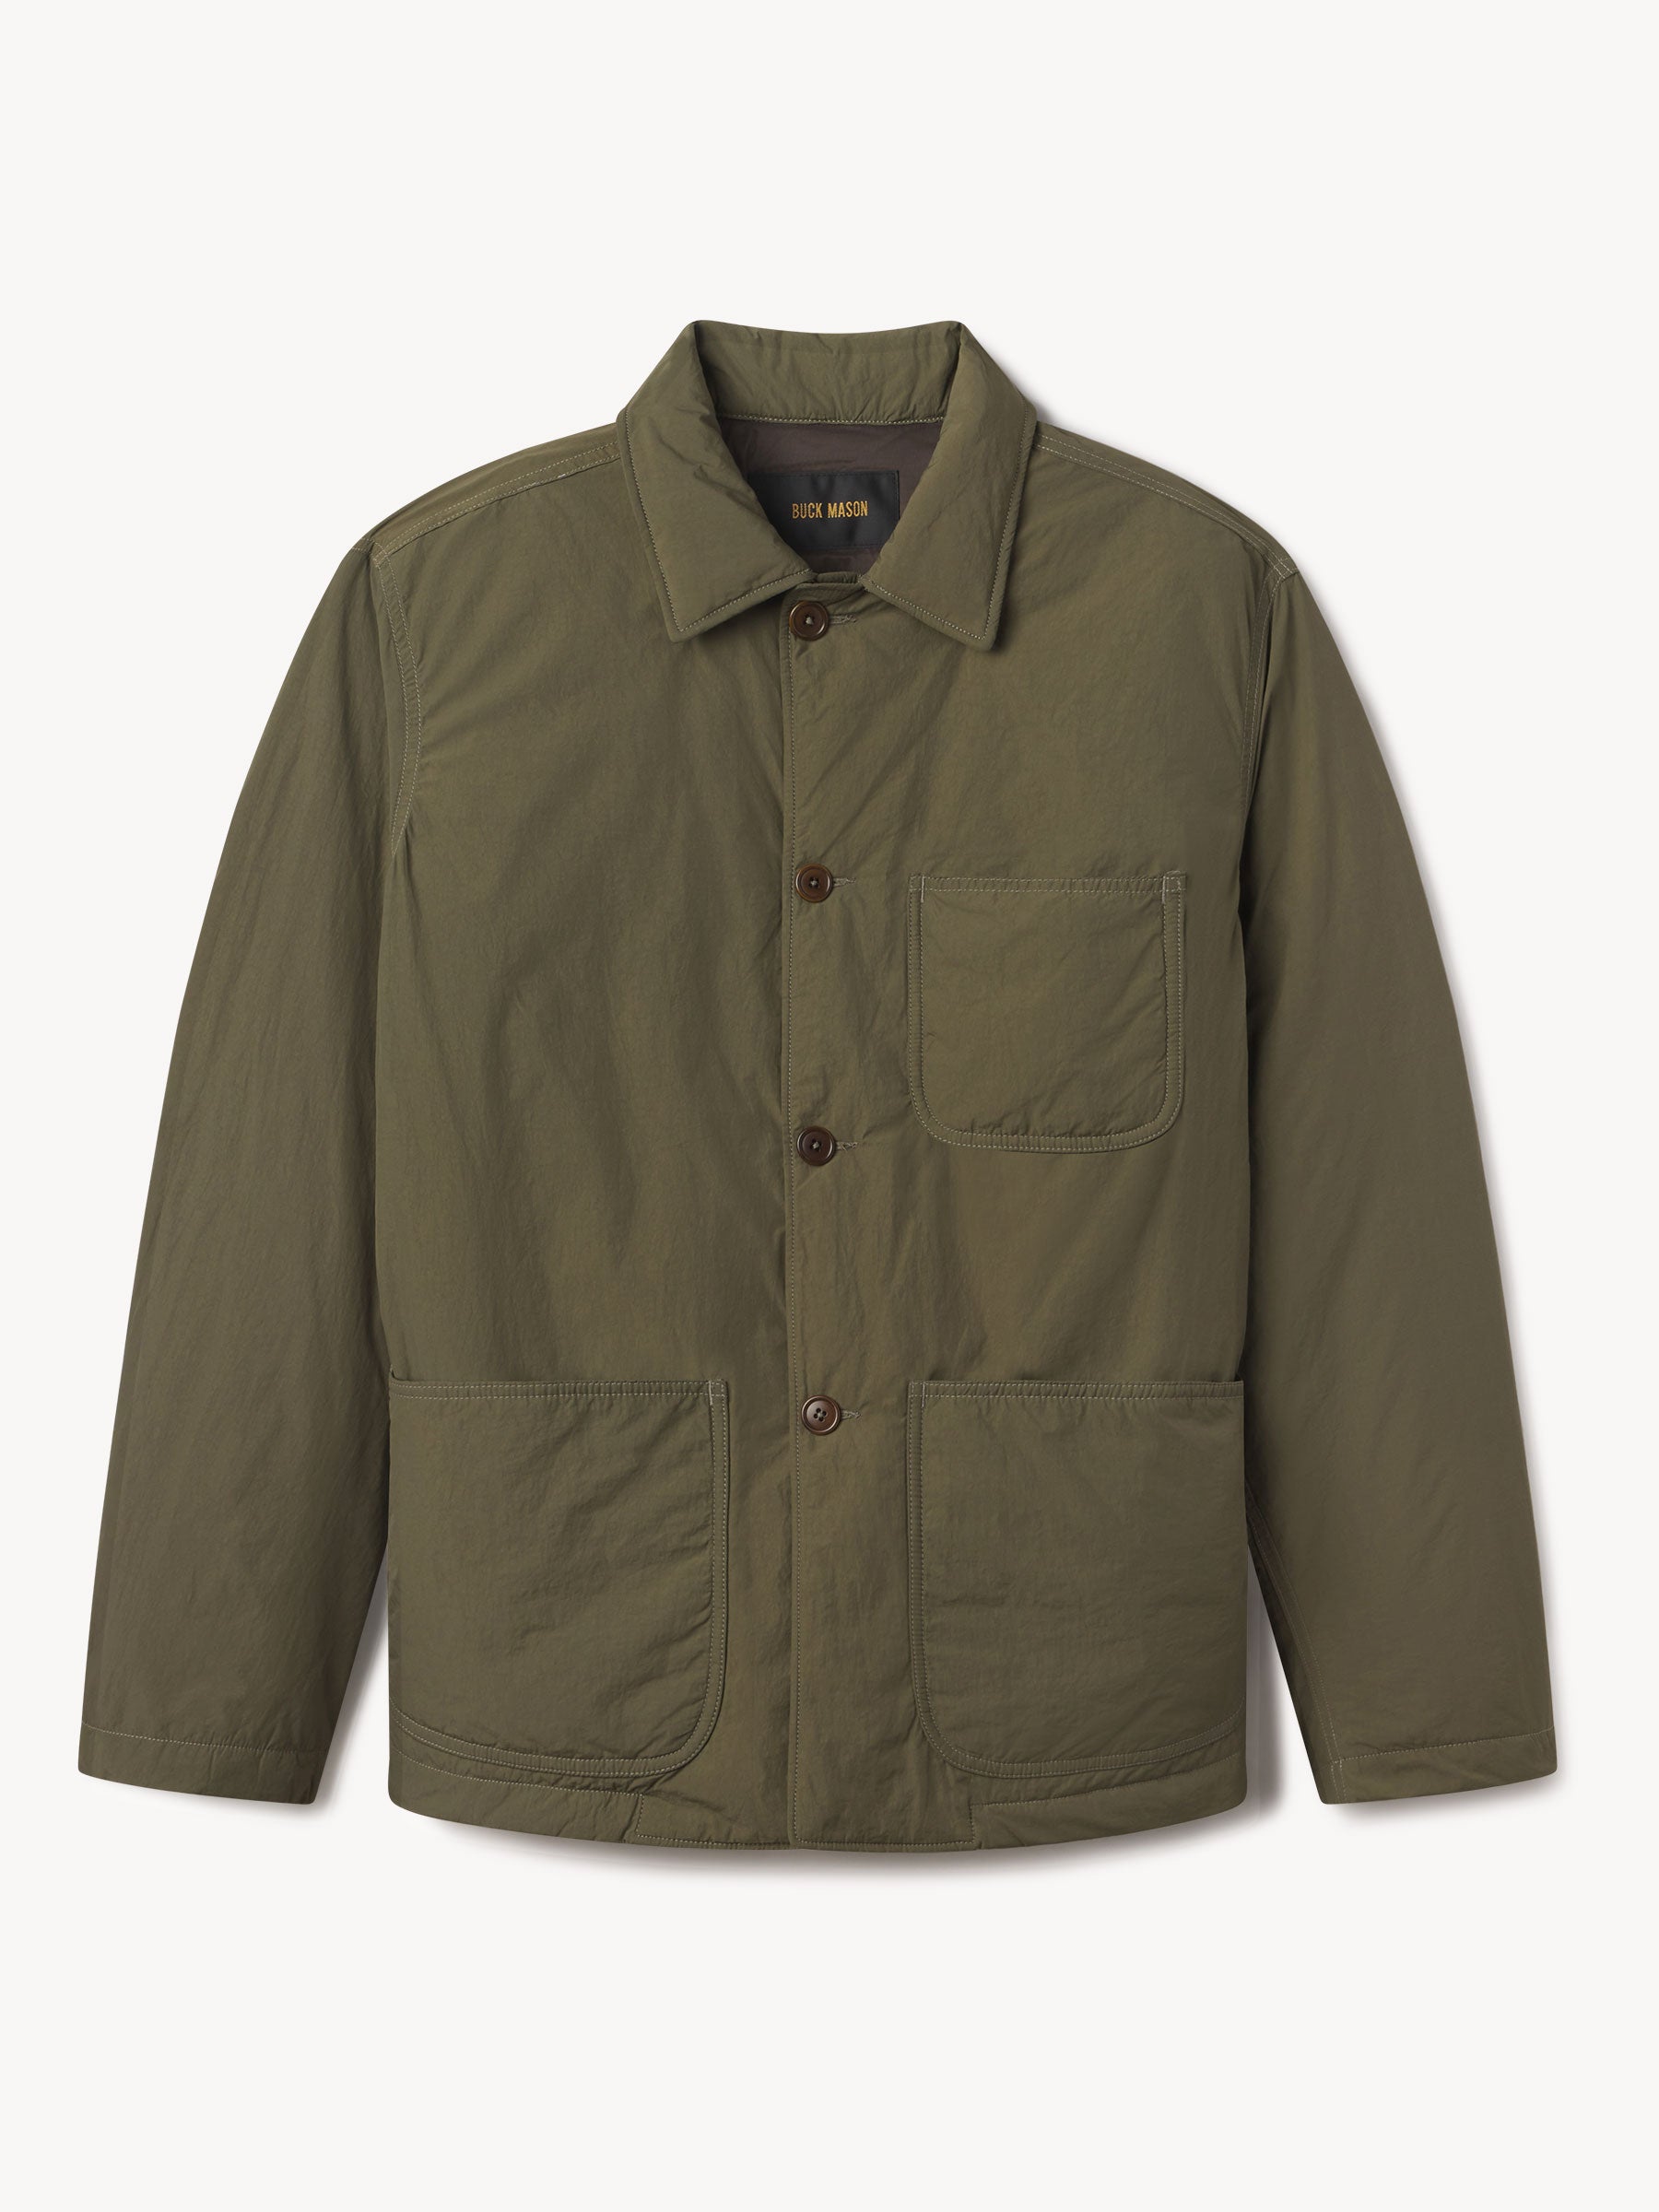 Ranger Green Shell Cloth Insulated Explorer Jacket - Buck Mason- Modern ...